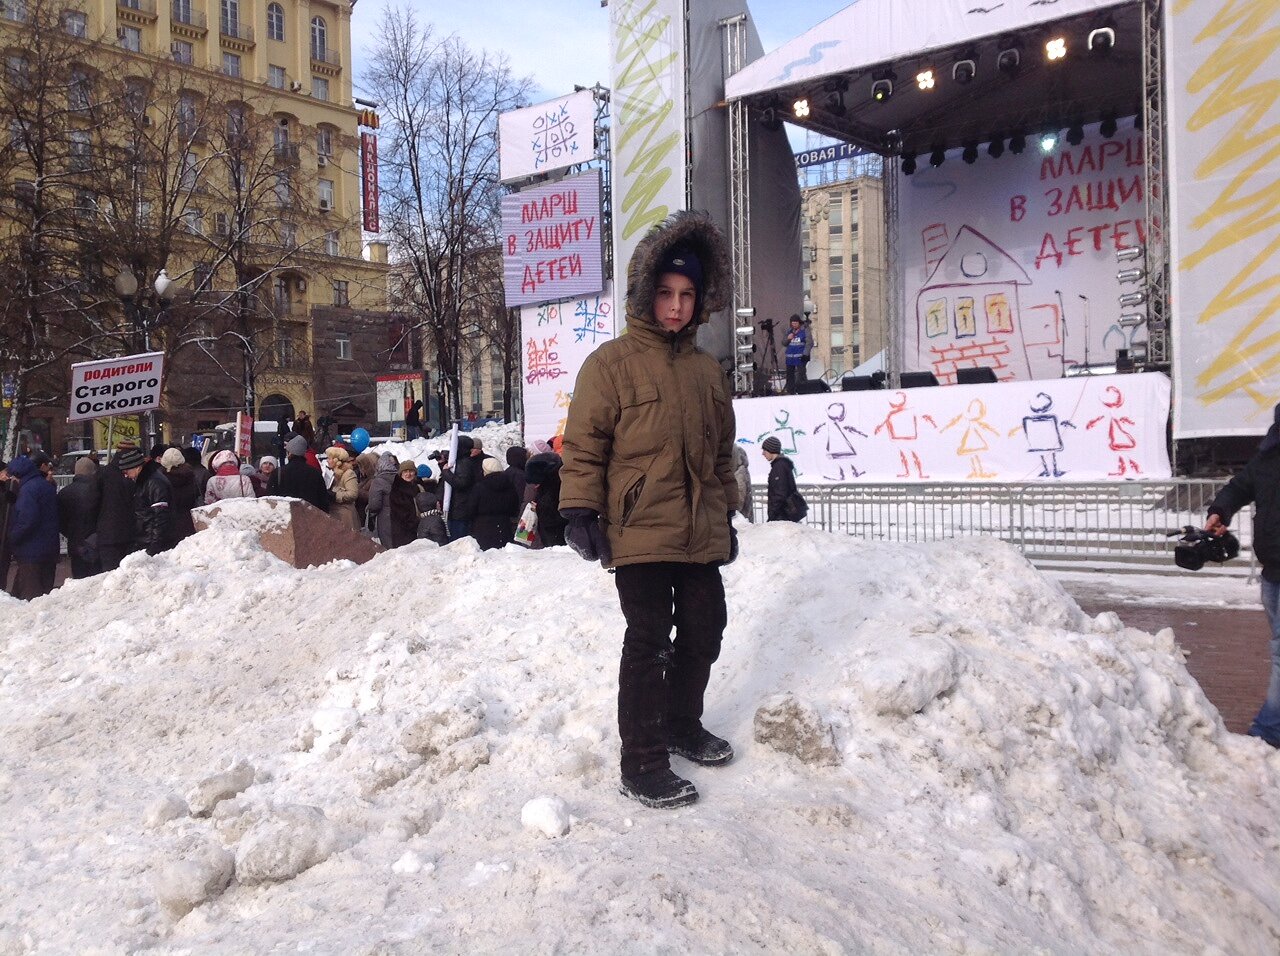 На марше «В защиту детей», Москва, 2 марта 2013. Автор фото: Егор Максимов